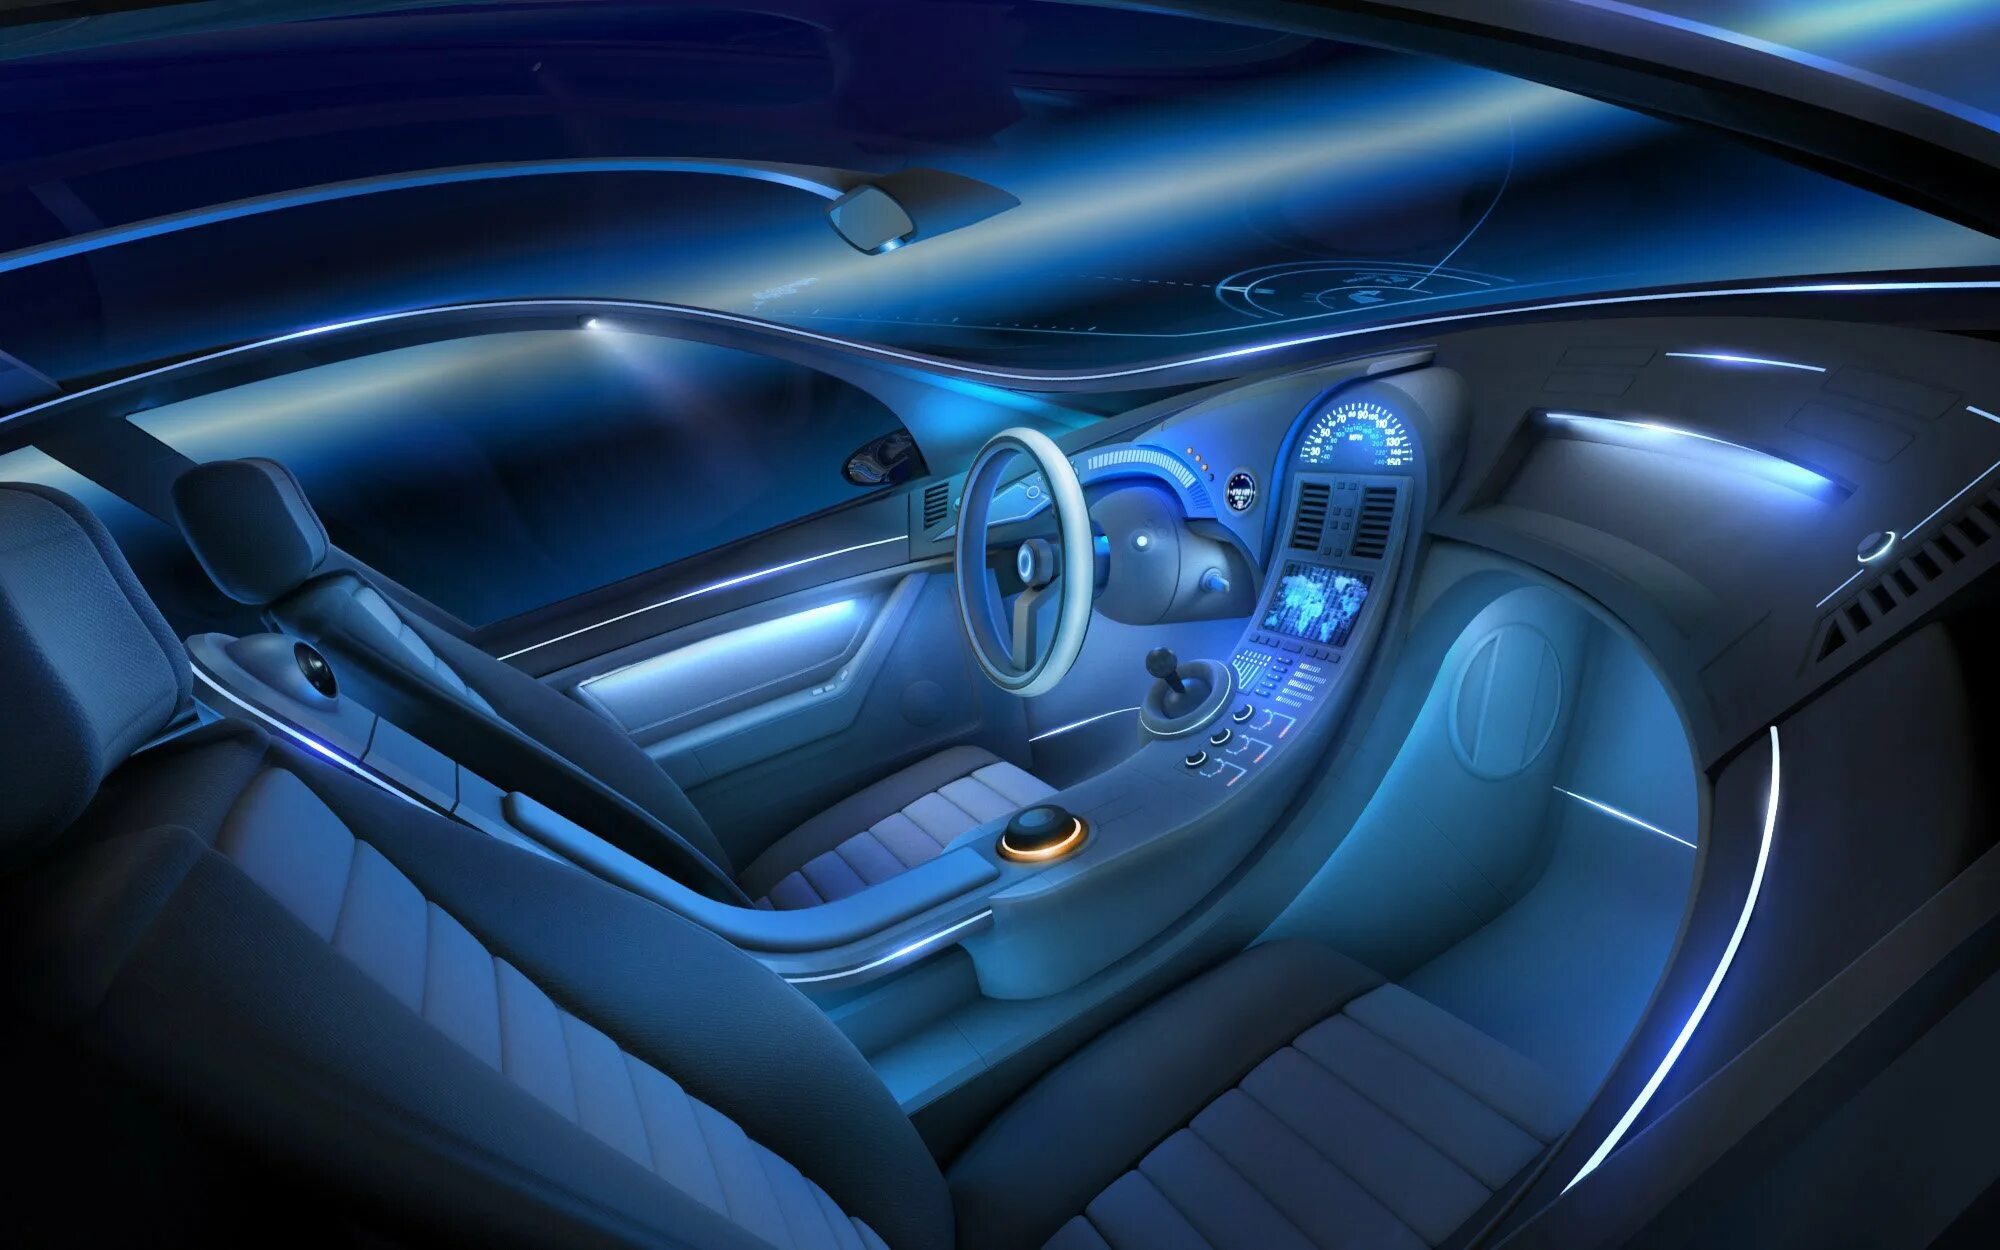 Инсайд машина. Mercedes Benz w222 салон подсветка. Подсветка салона автомобиля. Красивая подсветка салона автомобиля. Подсветка внутри машины.